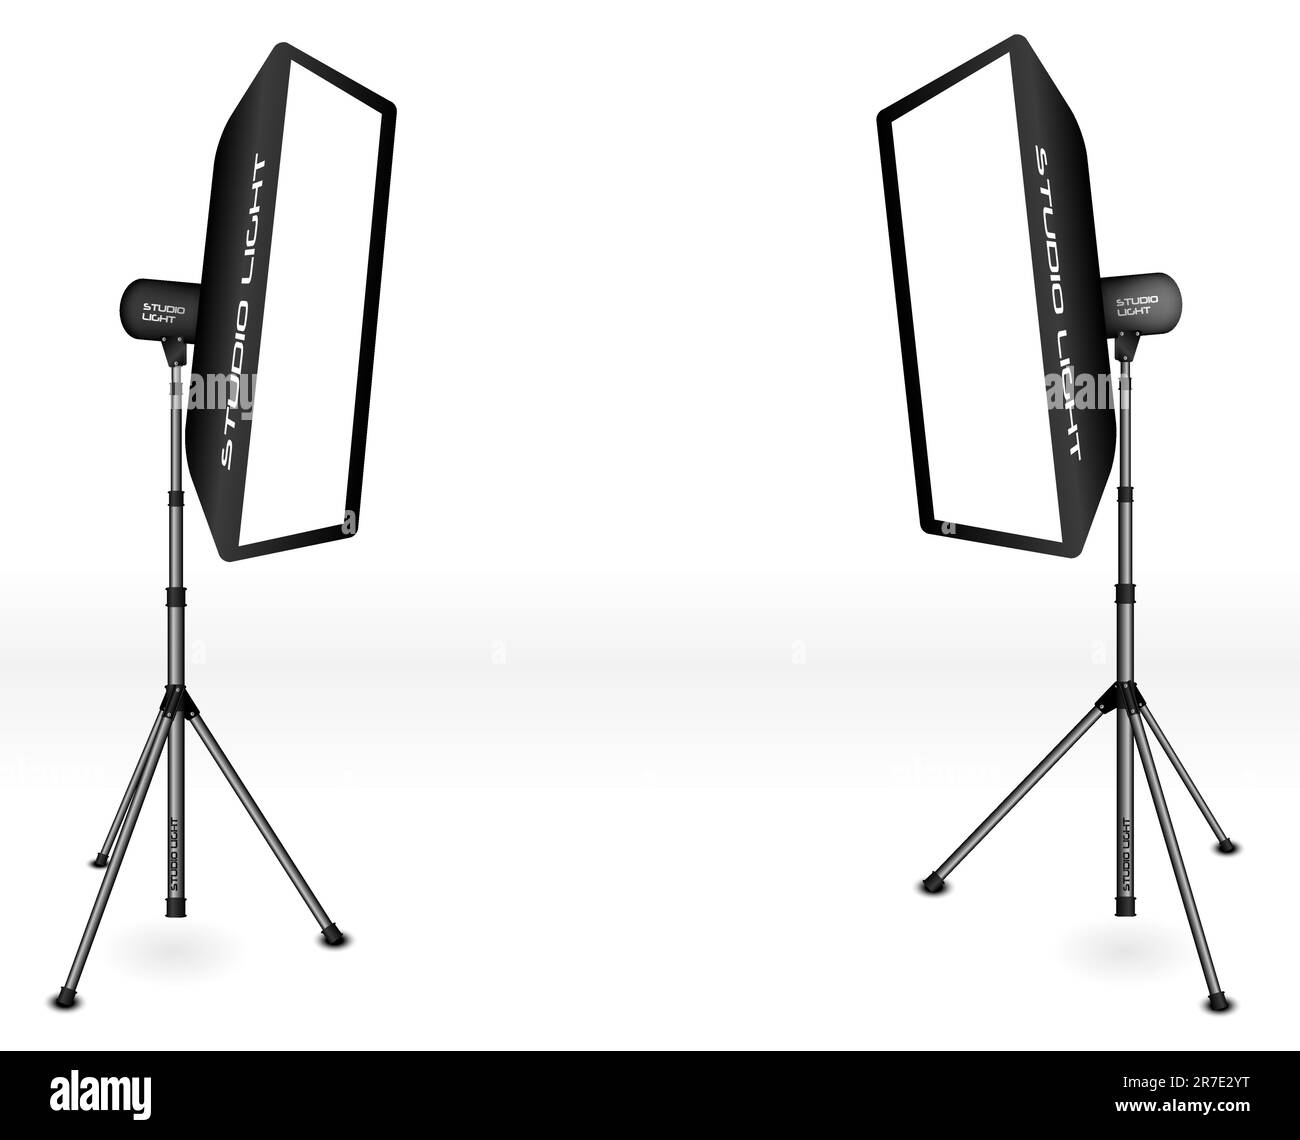 Fotografische Beleuchtung - zwei professionelle Studioleuchten mit Soft-Boxen auf Stativen auf weißem Hintergrund Stock Vektor